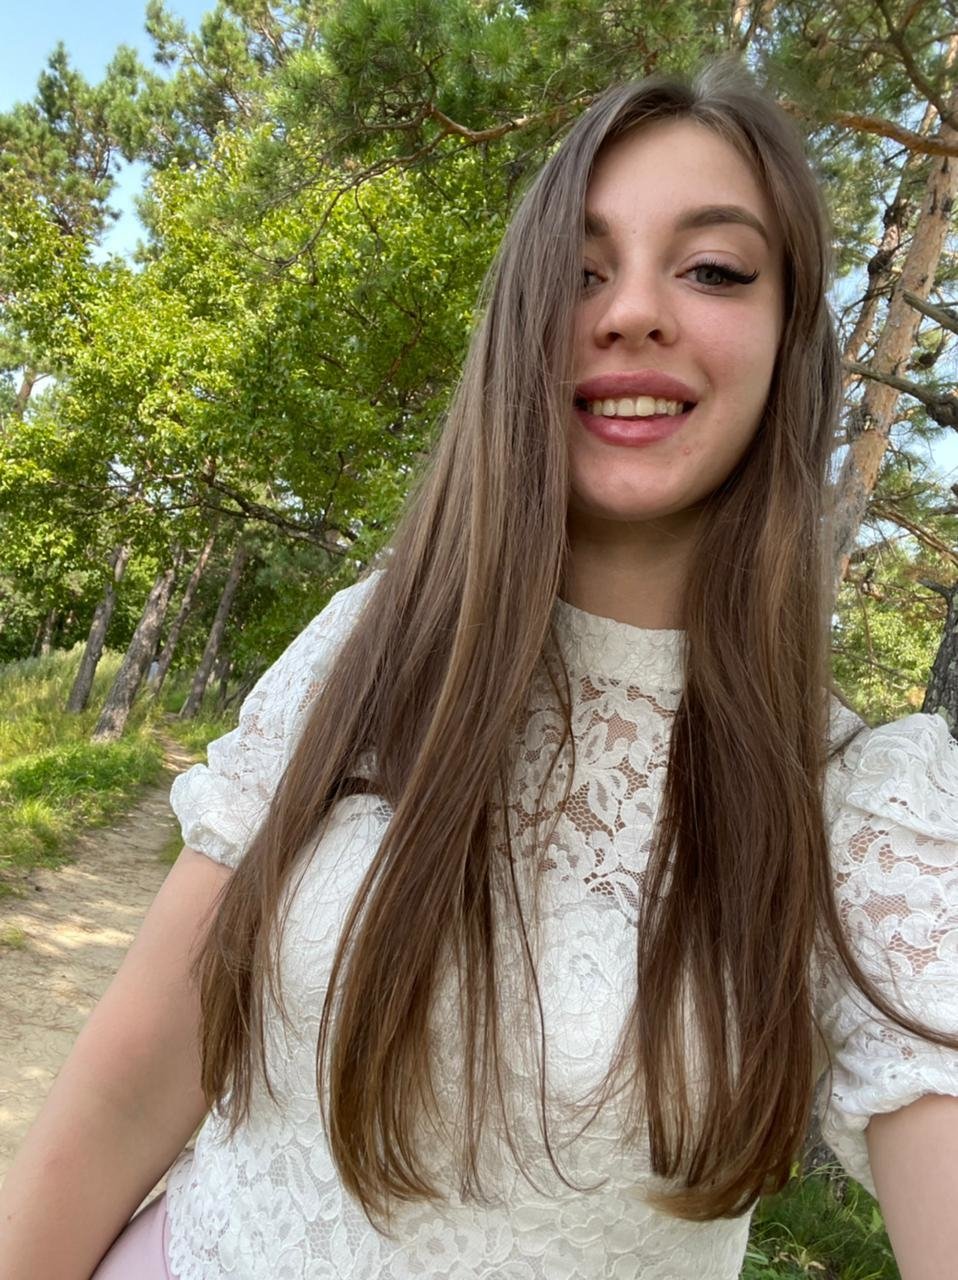 ניקיטה בחורה ישראלית רוסיה סקסית – באיזור המרכז